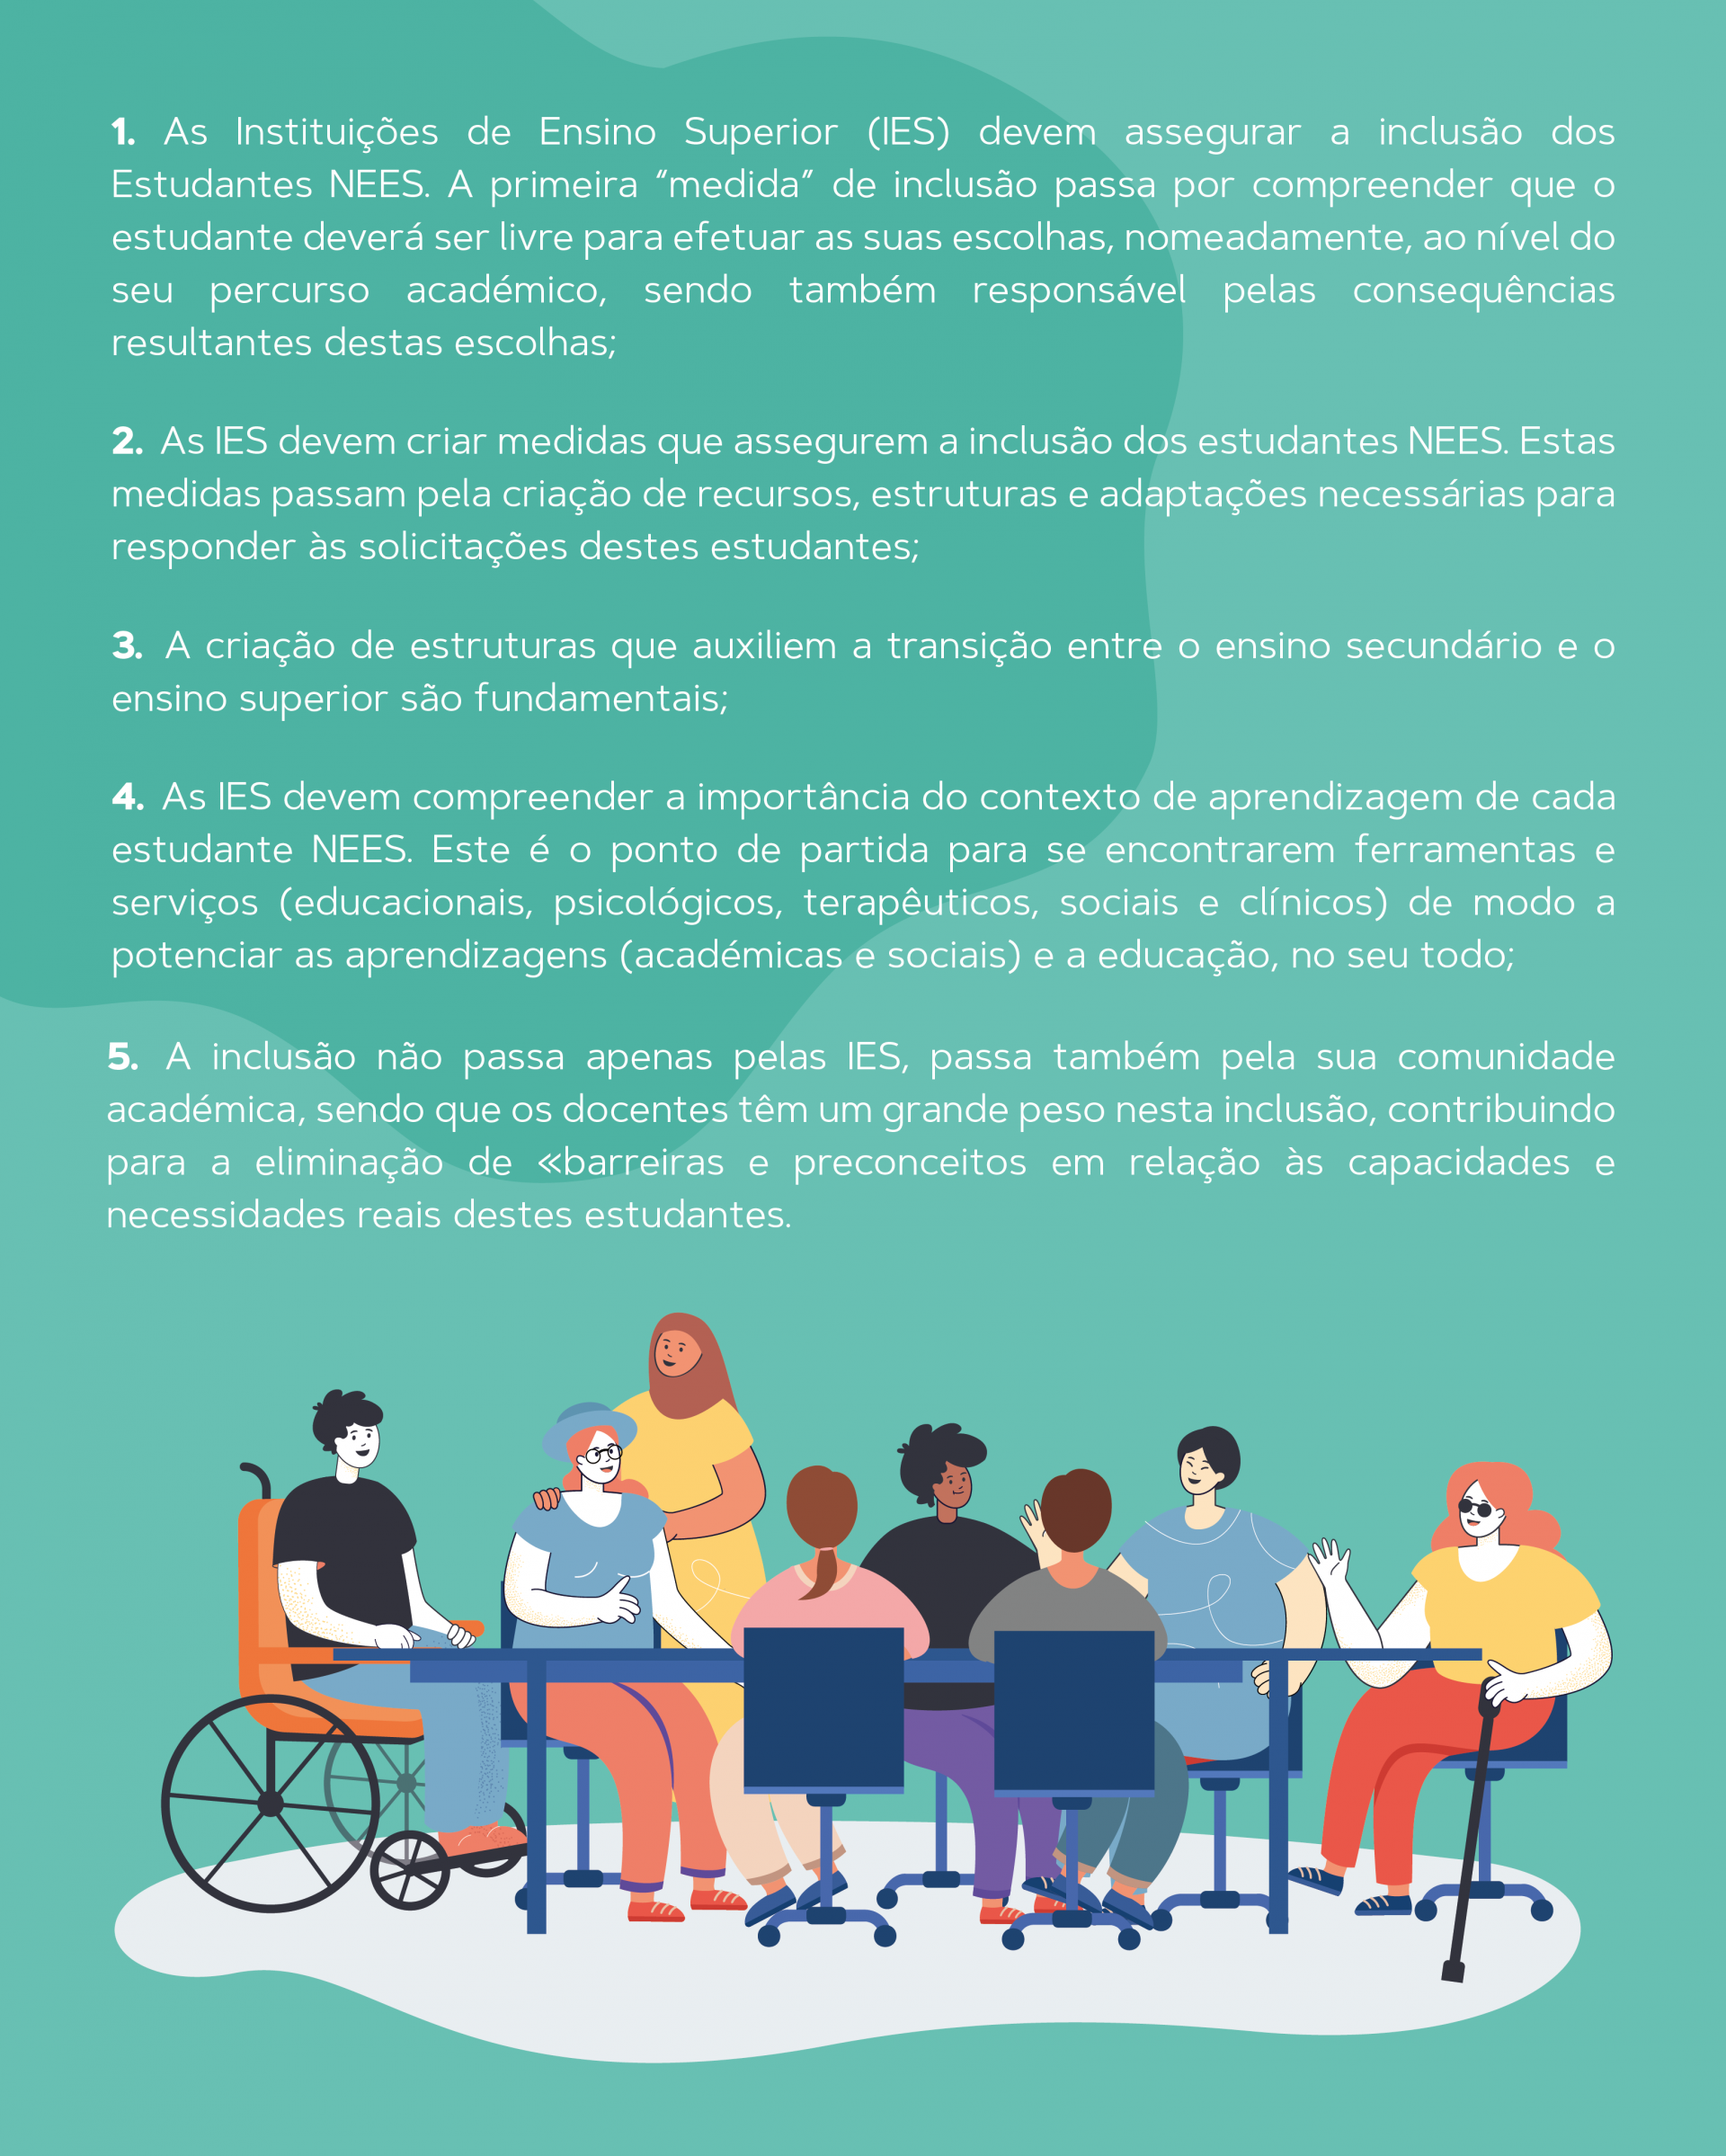 cartaz verde com texto e imagem que representa a inclusão das necessidades especiais